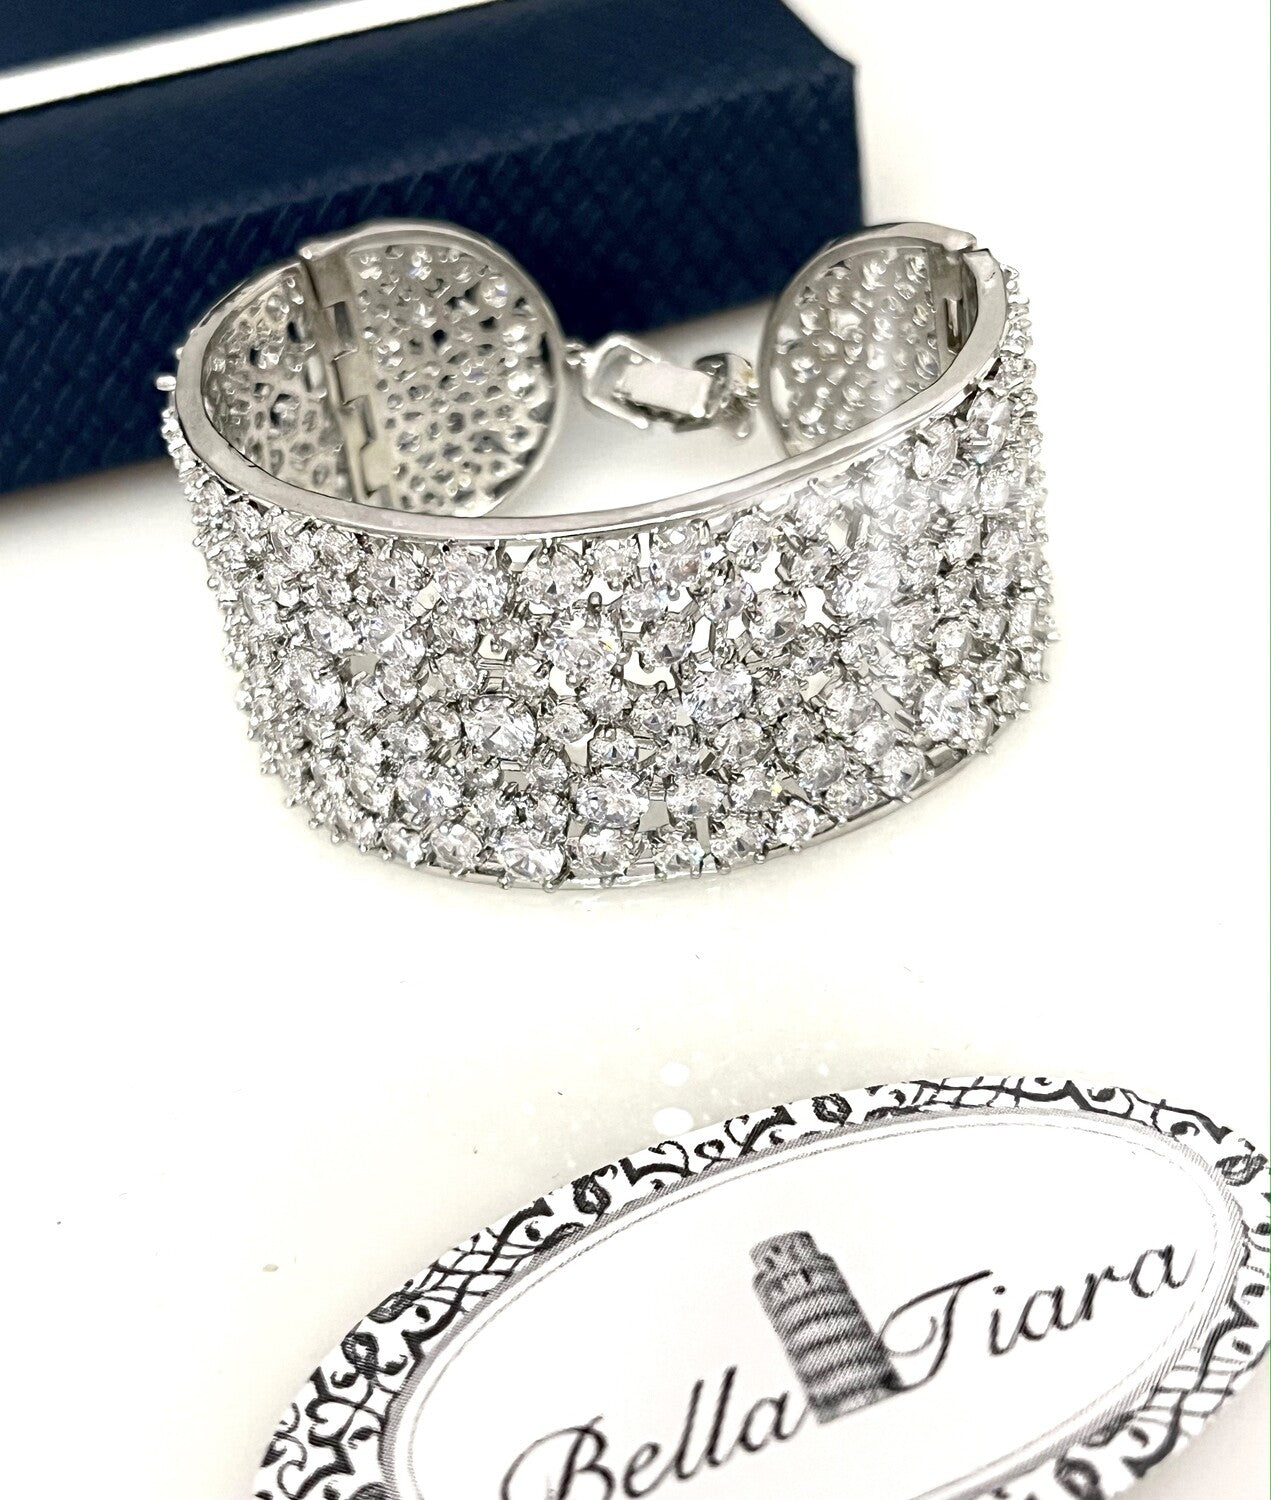 Valencia, Glamorous wide crystal cuff wedding bracelet